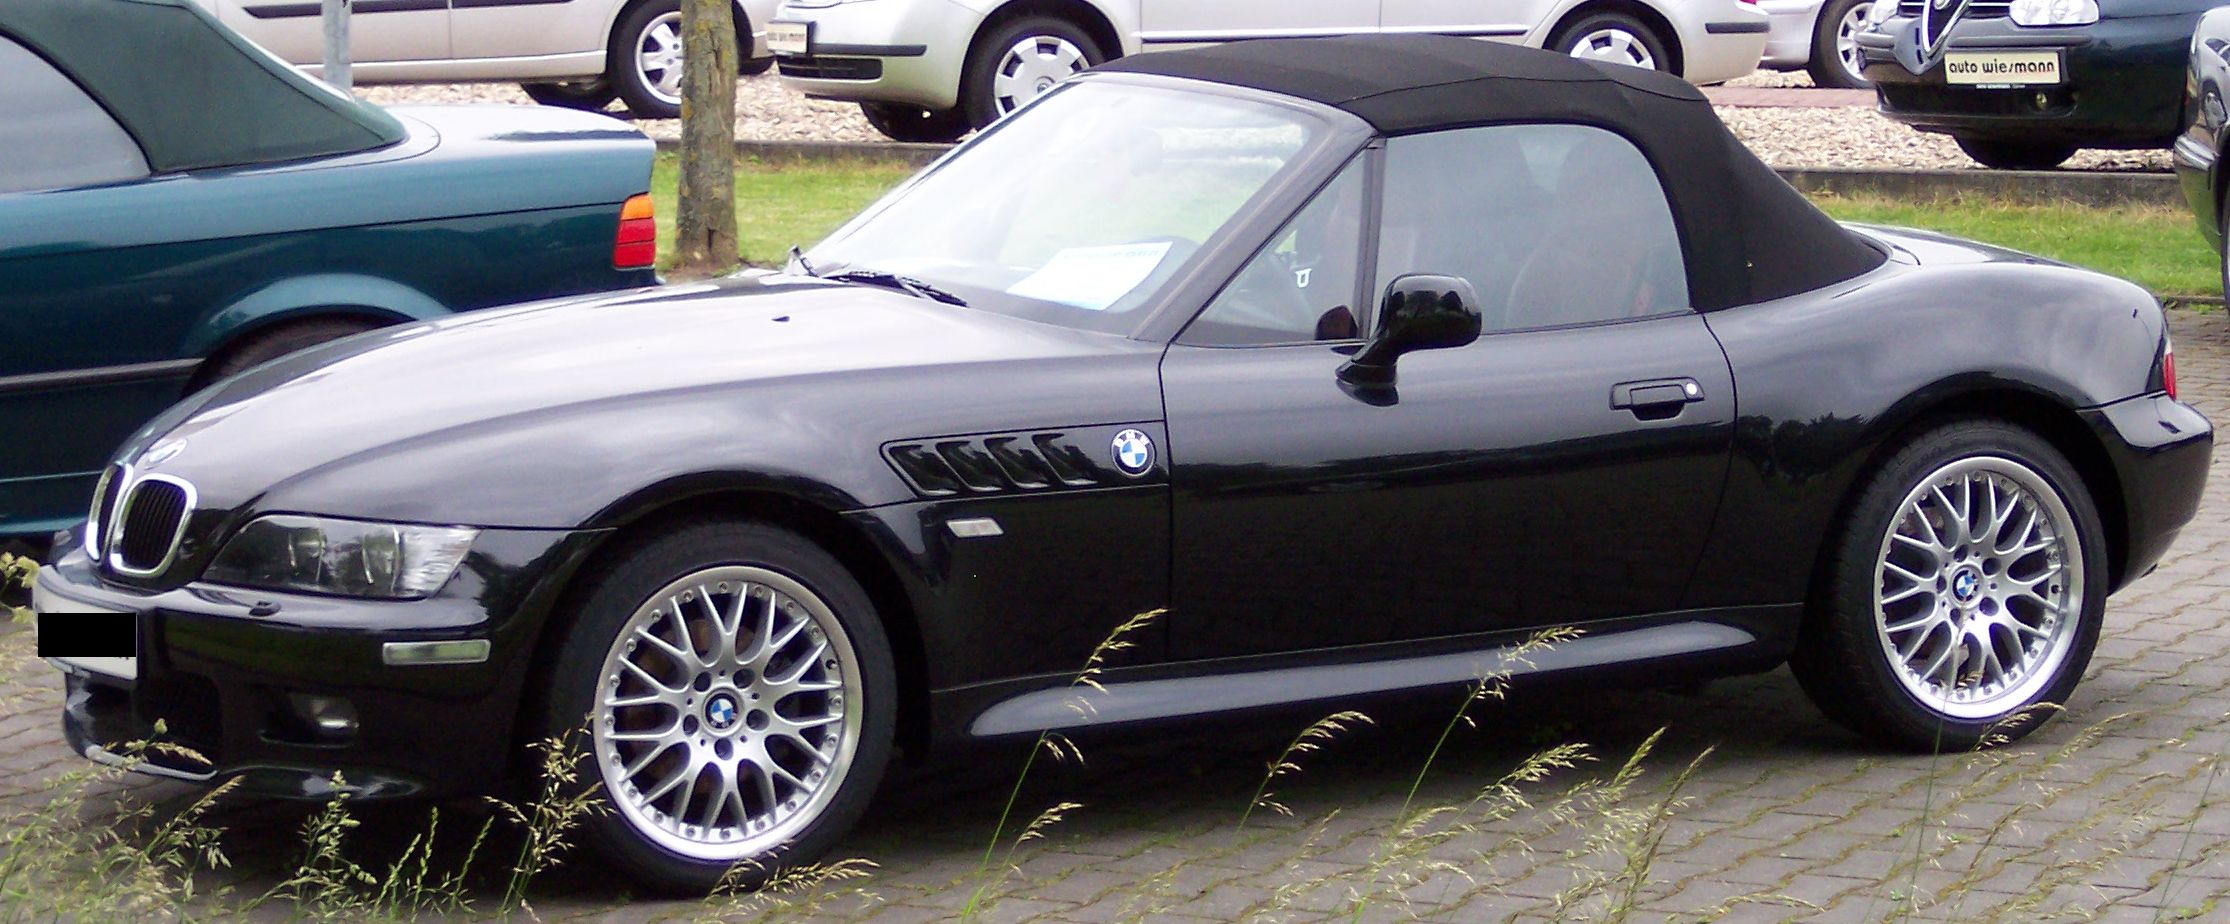 File:BMW Z3 black vl.jpg